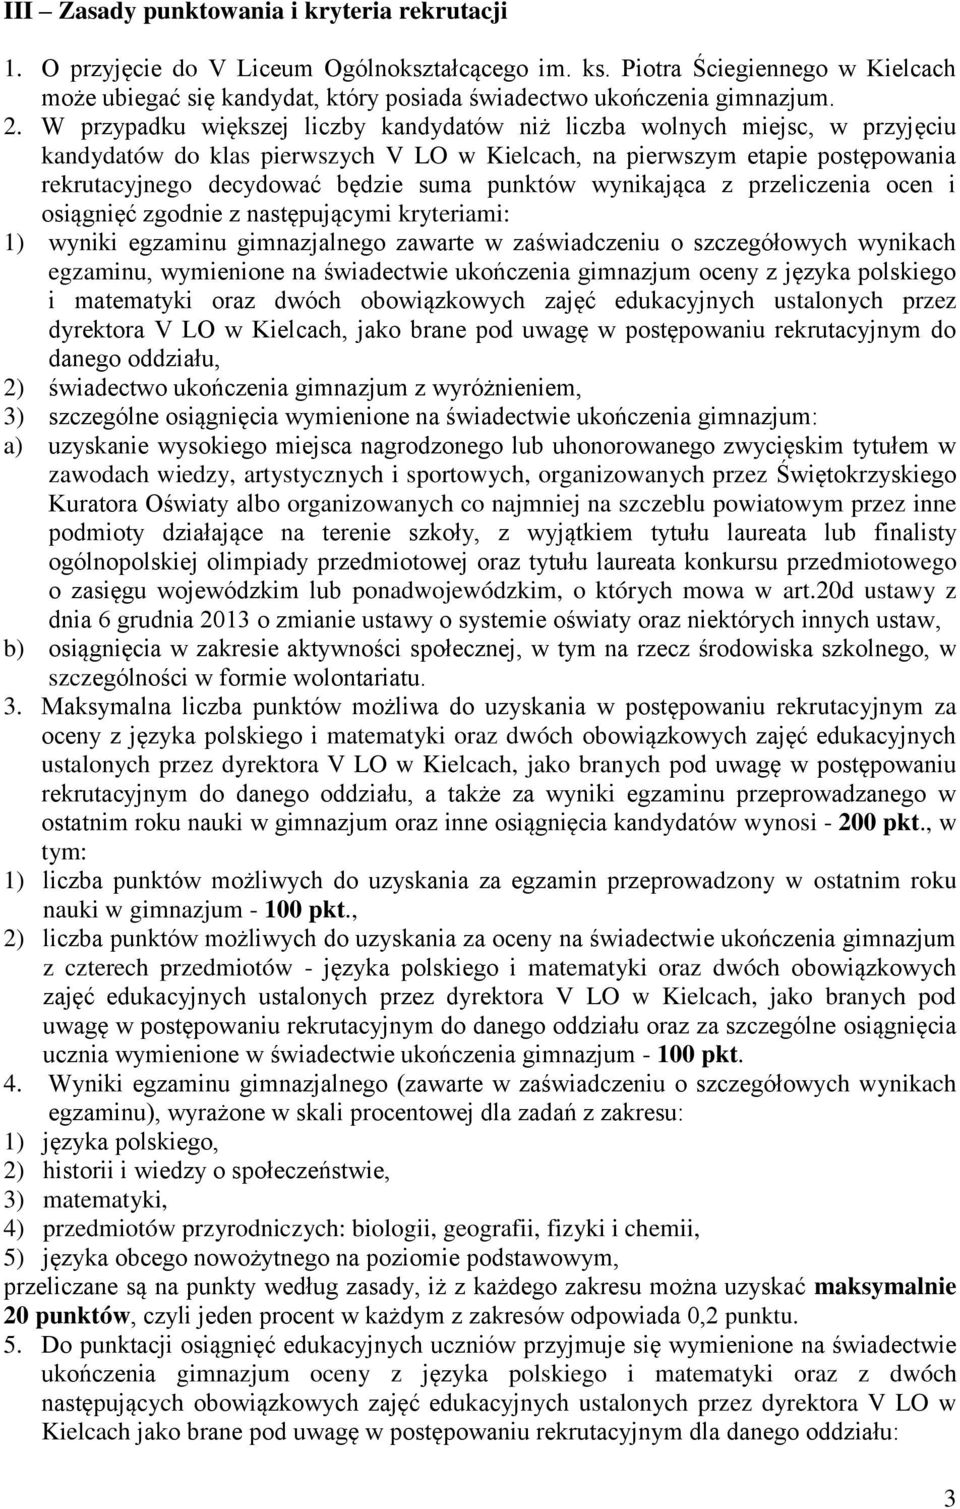 W przypadku większej liczby kandydatów niż liczba wolnych miejsc, w przyjęciu kandydatów do klas pierwszych V LO w Kielcach, na pierwszym etapie postępowania rekrutacyjnego decydować będzie suma